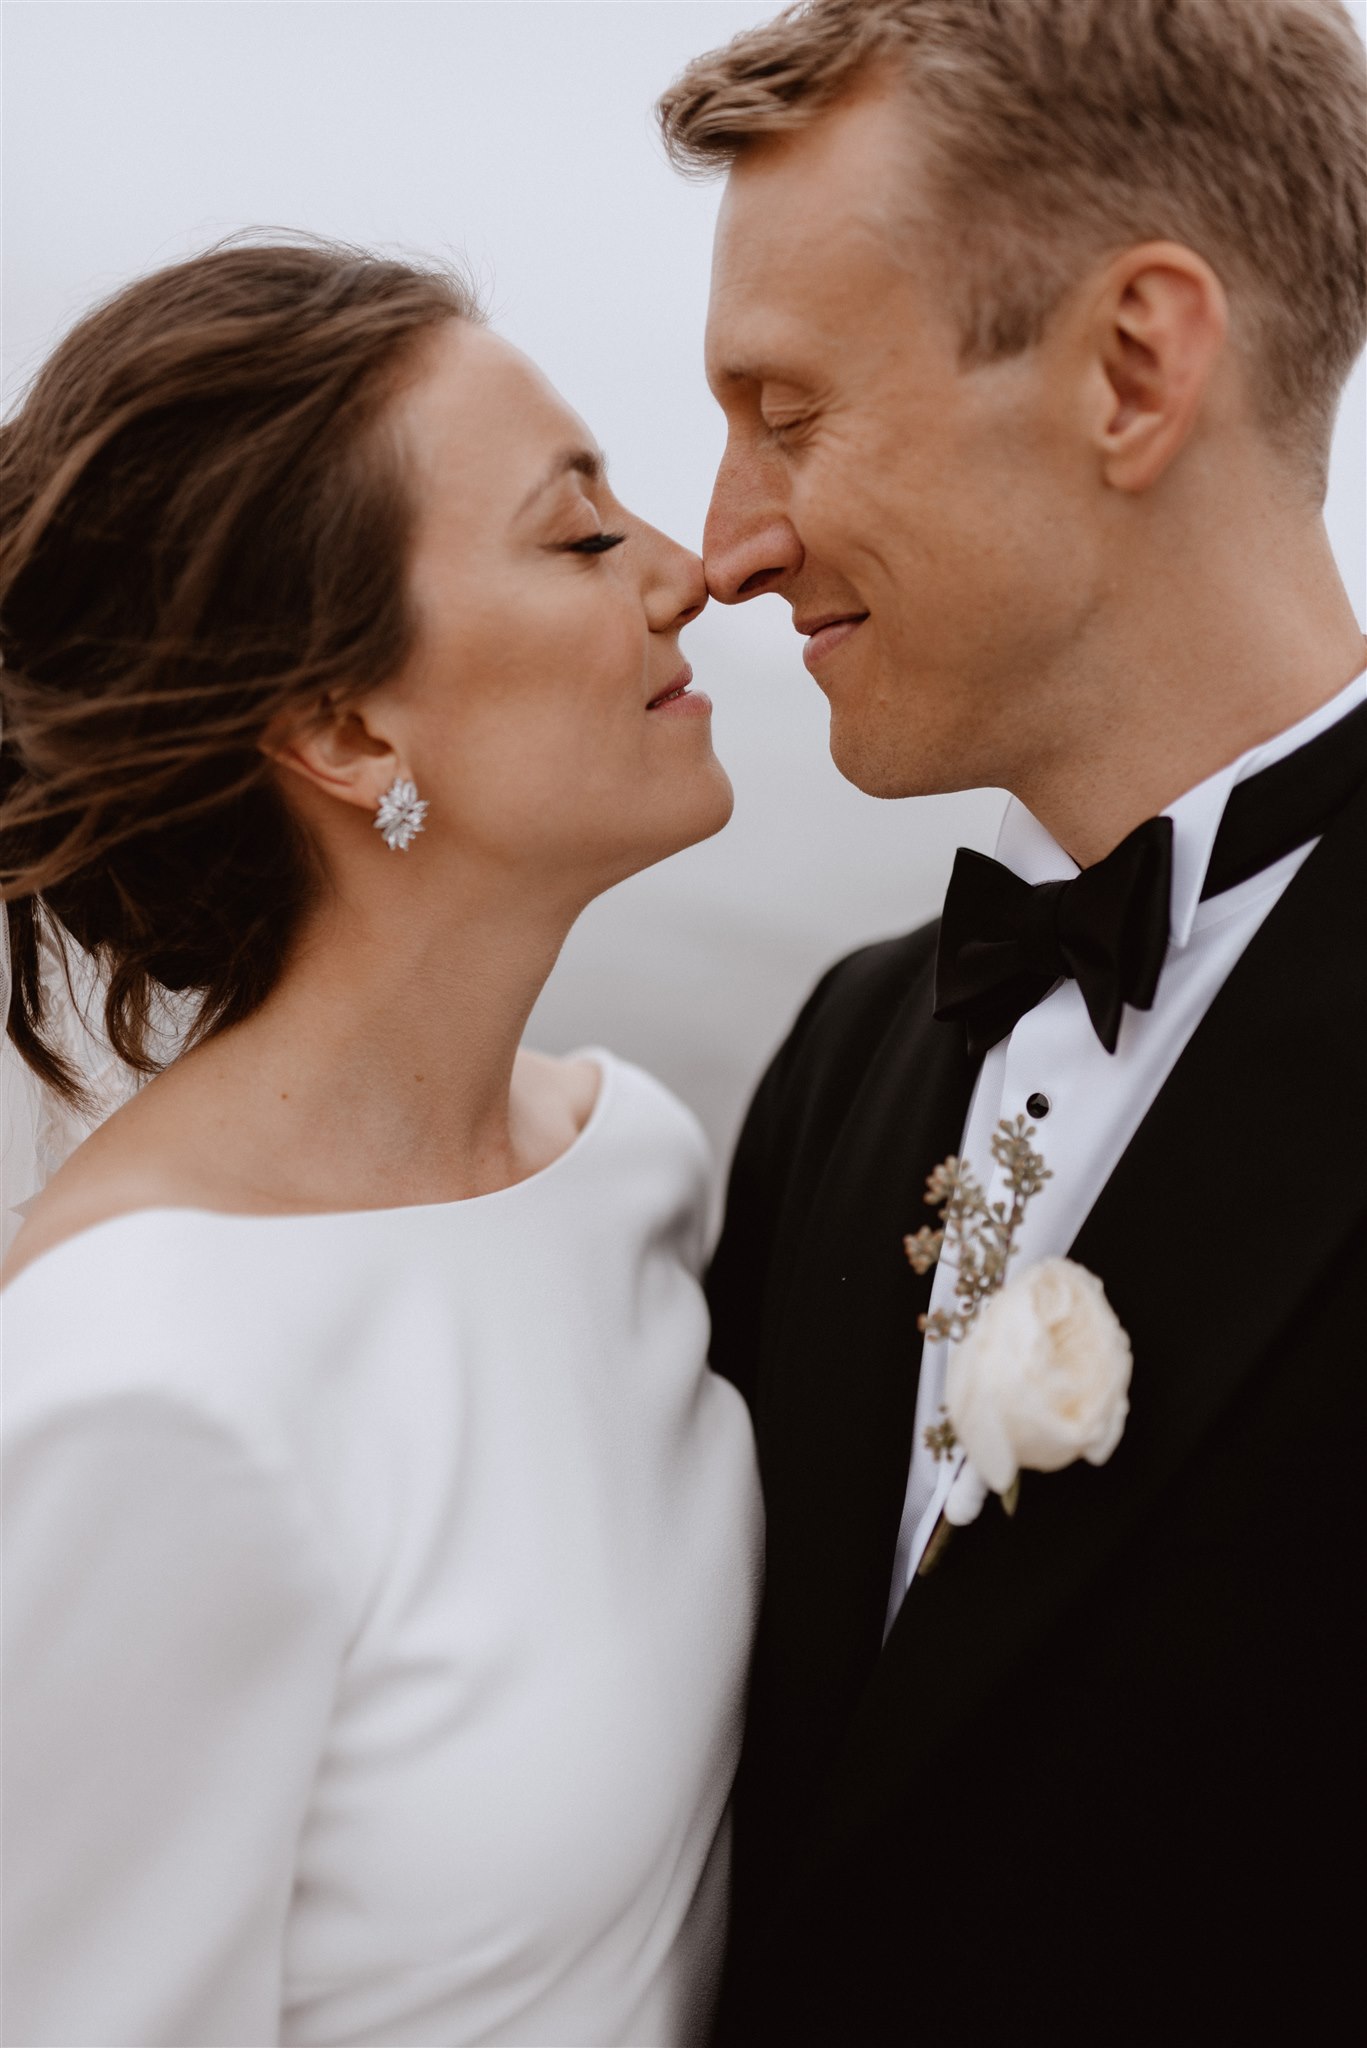 Nadia & Wiktor - bajkowy ślub - z Dubaju do Polski | Bogna Bojanowska Wedding Planner